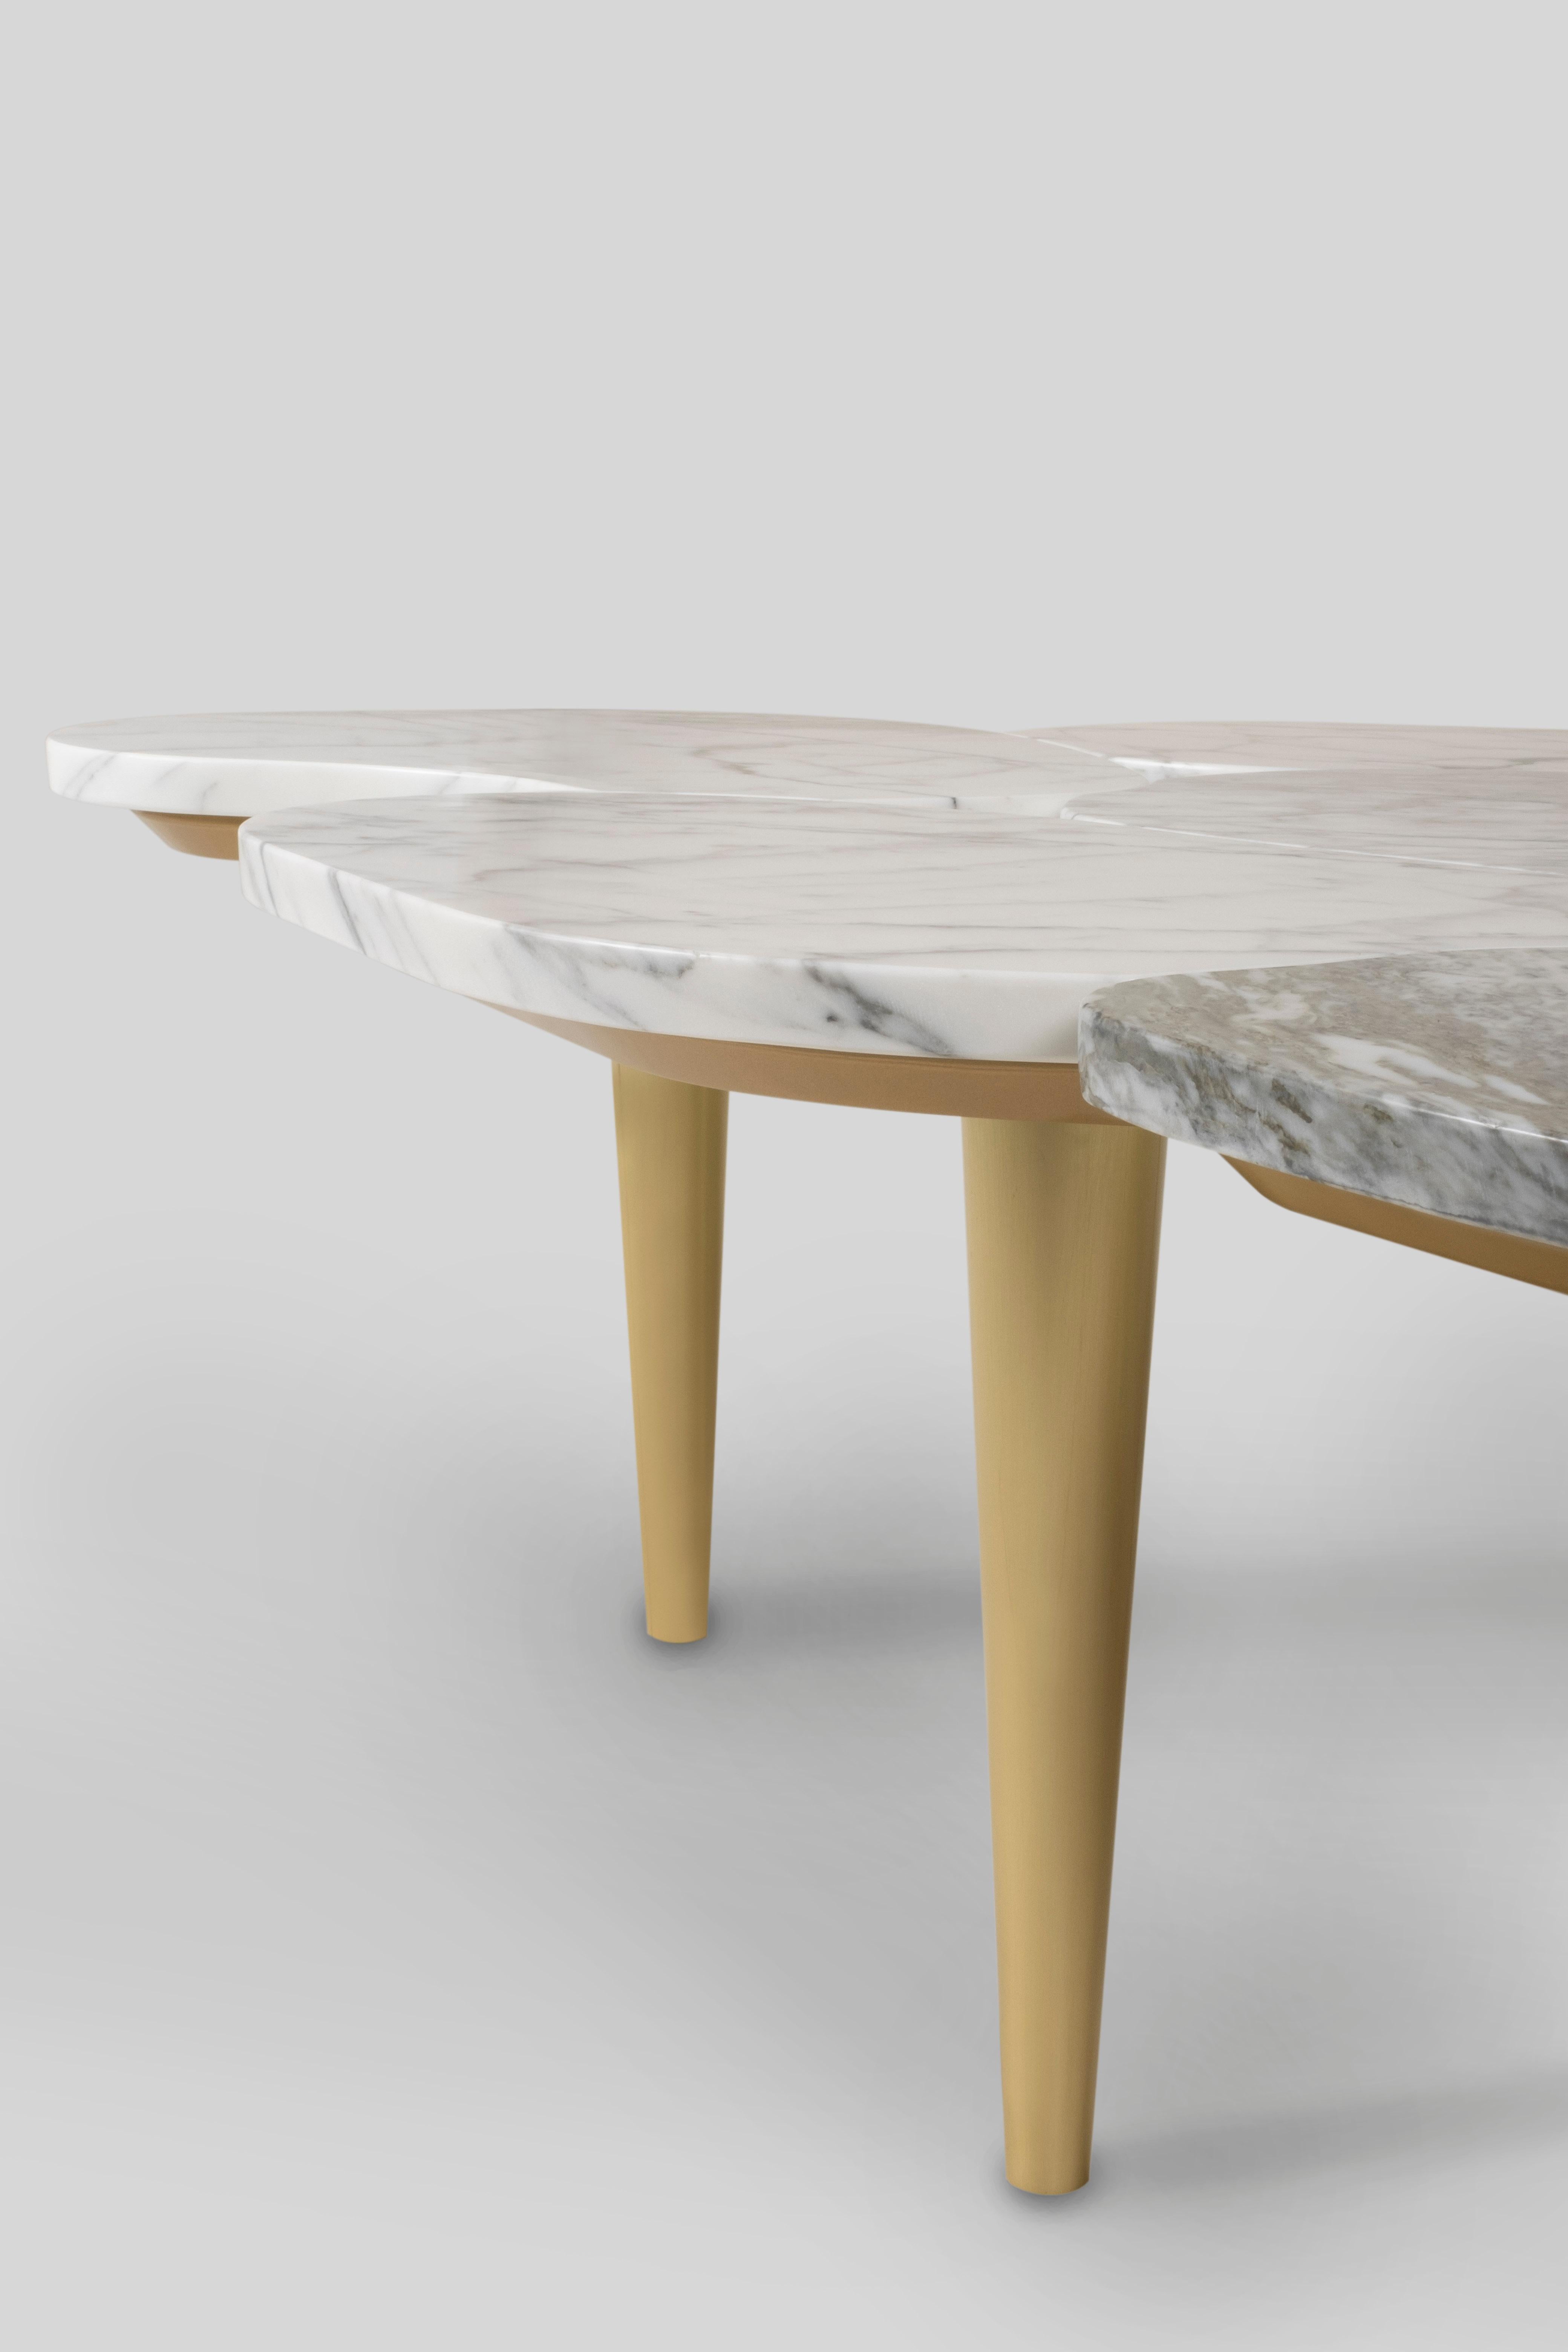 Table basse Infinity, Collection S, fabriquée à la main au Portugal - Europe par GF Modern.

La table basse en marbre Infinity capture le passage du temps dans un regard infini. Doté d'un plateau en forme de pétale en marbre de Carrare, Infinity